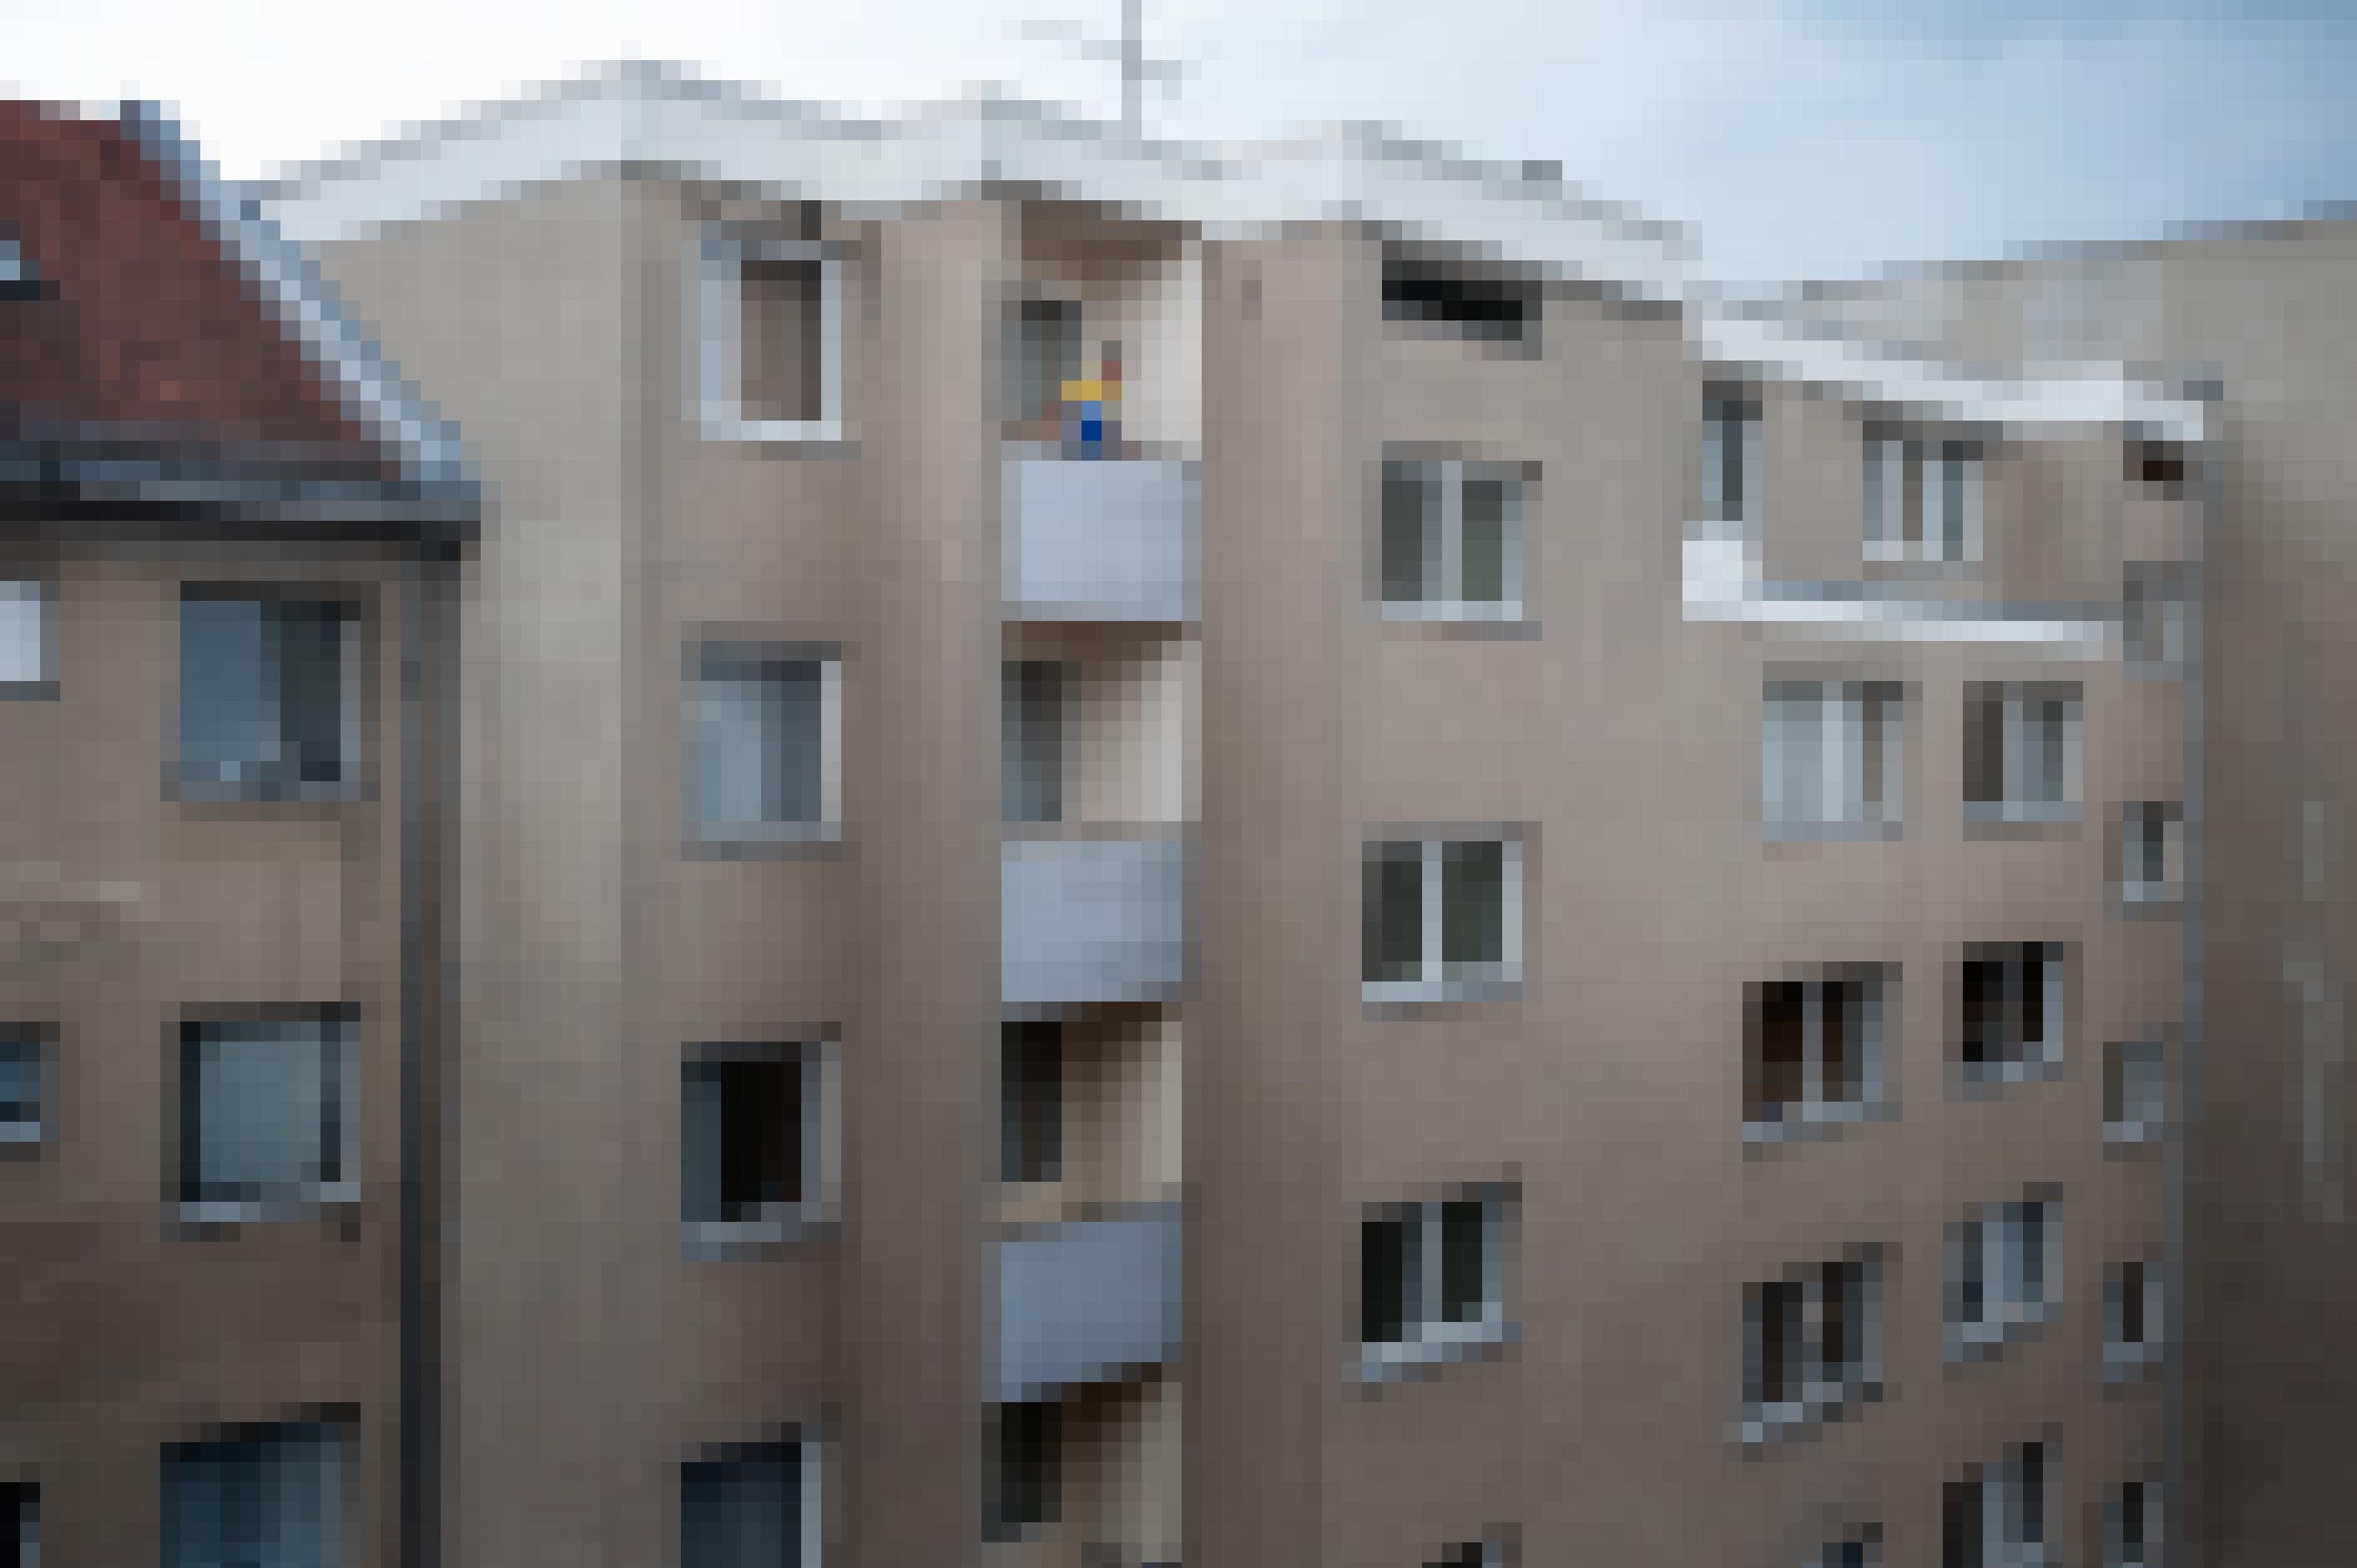 Nazir Jaser schaut von einem Balkon eines mehrstöckigen Wohnblocks nach draußen.